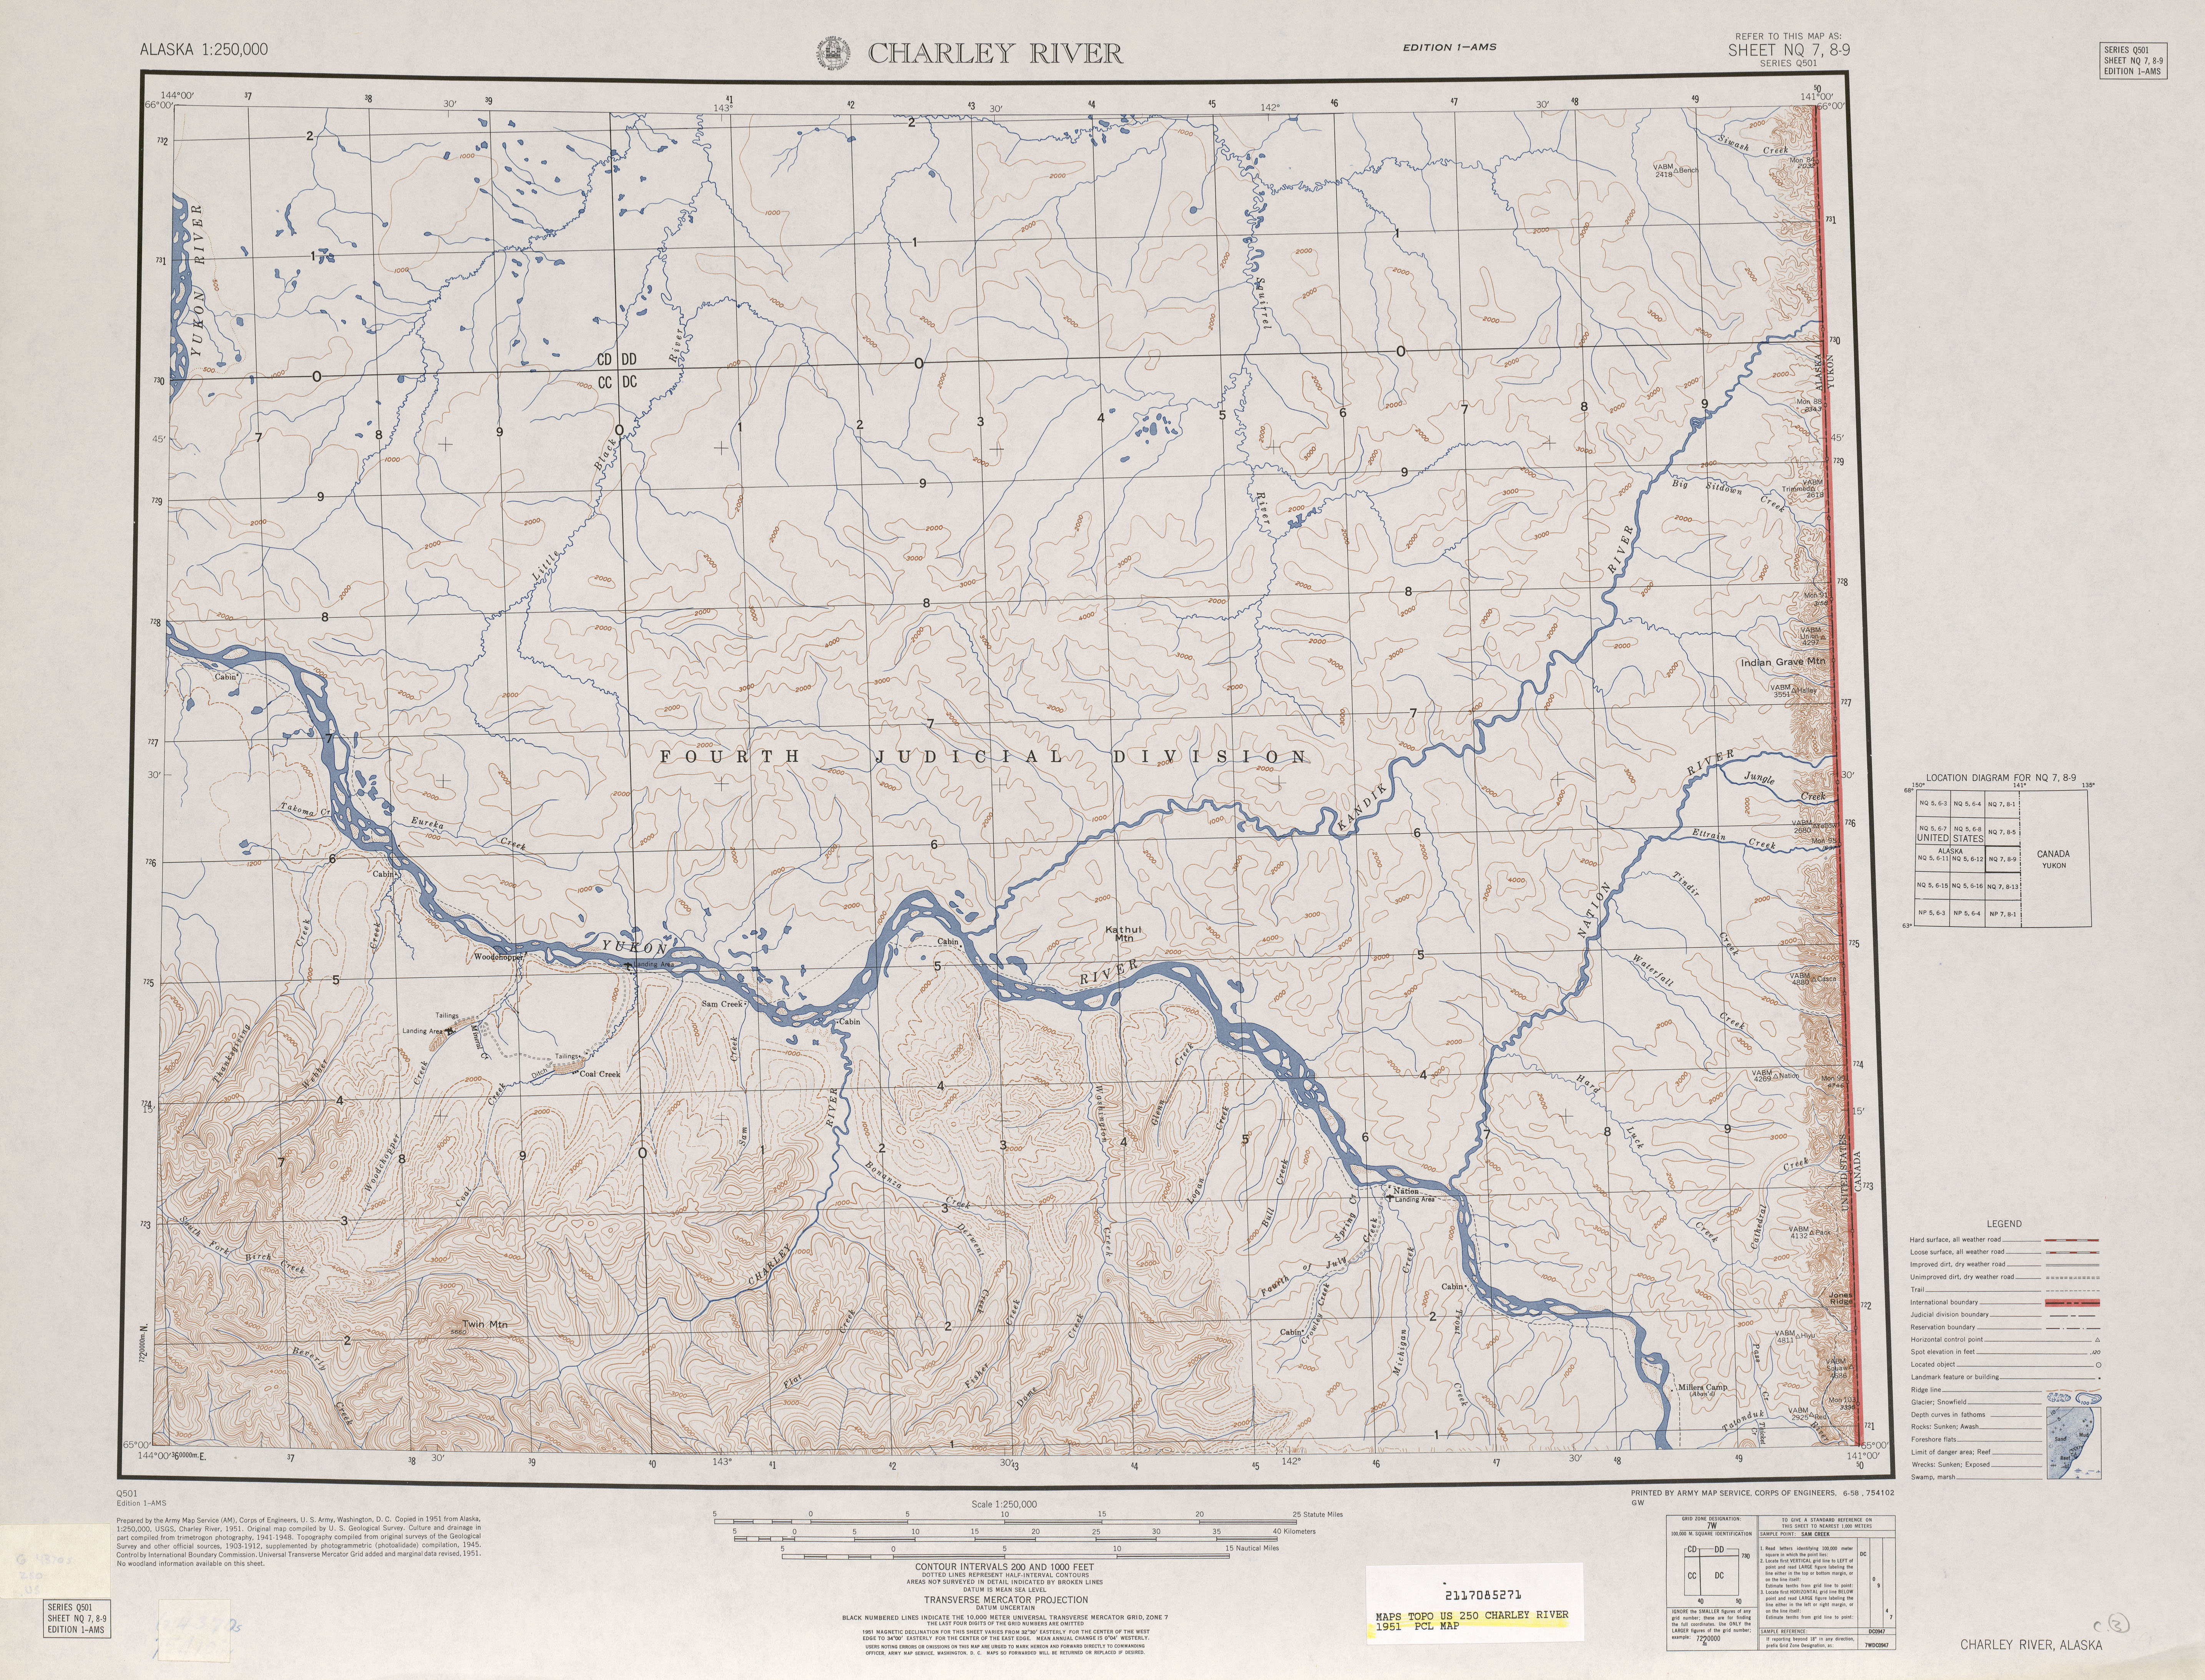 Hoja Charley River del Mapa Topográfico de los Estados Unidos 1951